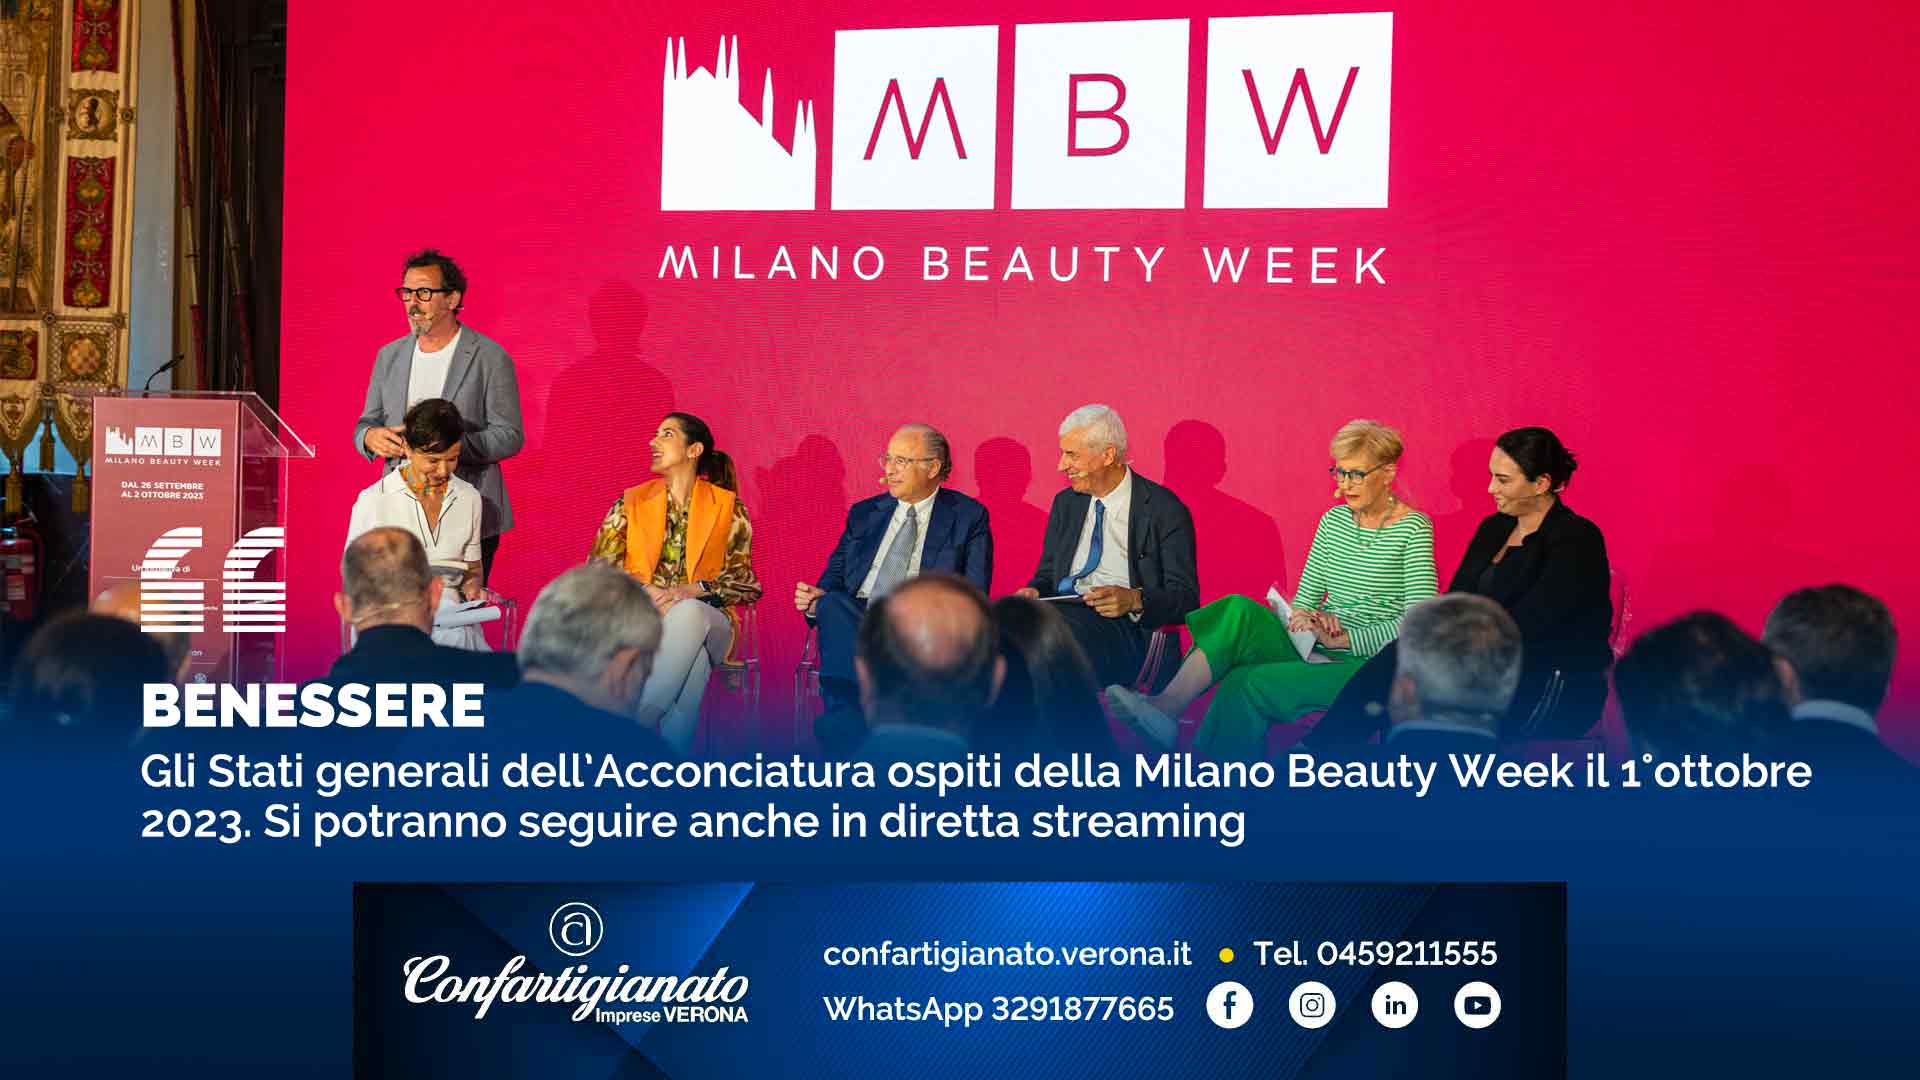 BENESSERE – Gli Stati generali dell’Acconciatura ospiti della Milano Beauty Week il 1°ottobre 2023. Si potranno seguire anche in diretta streaming